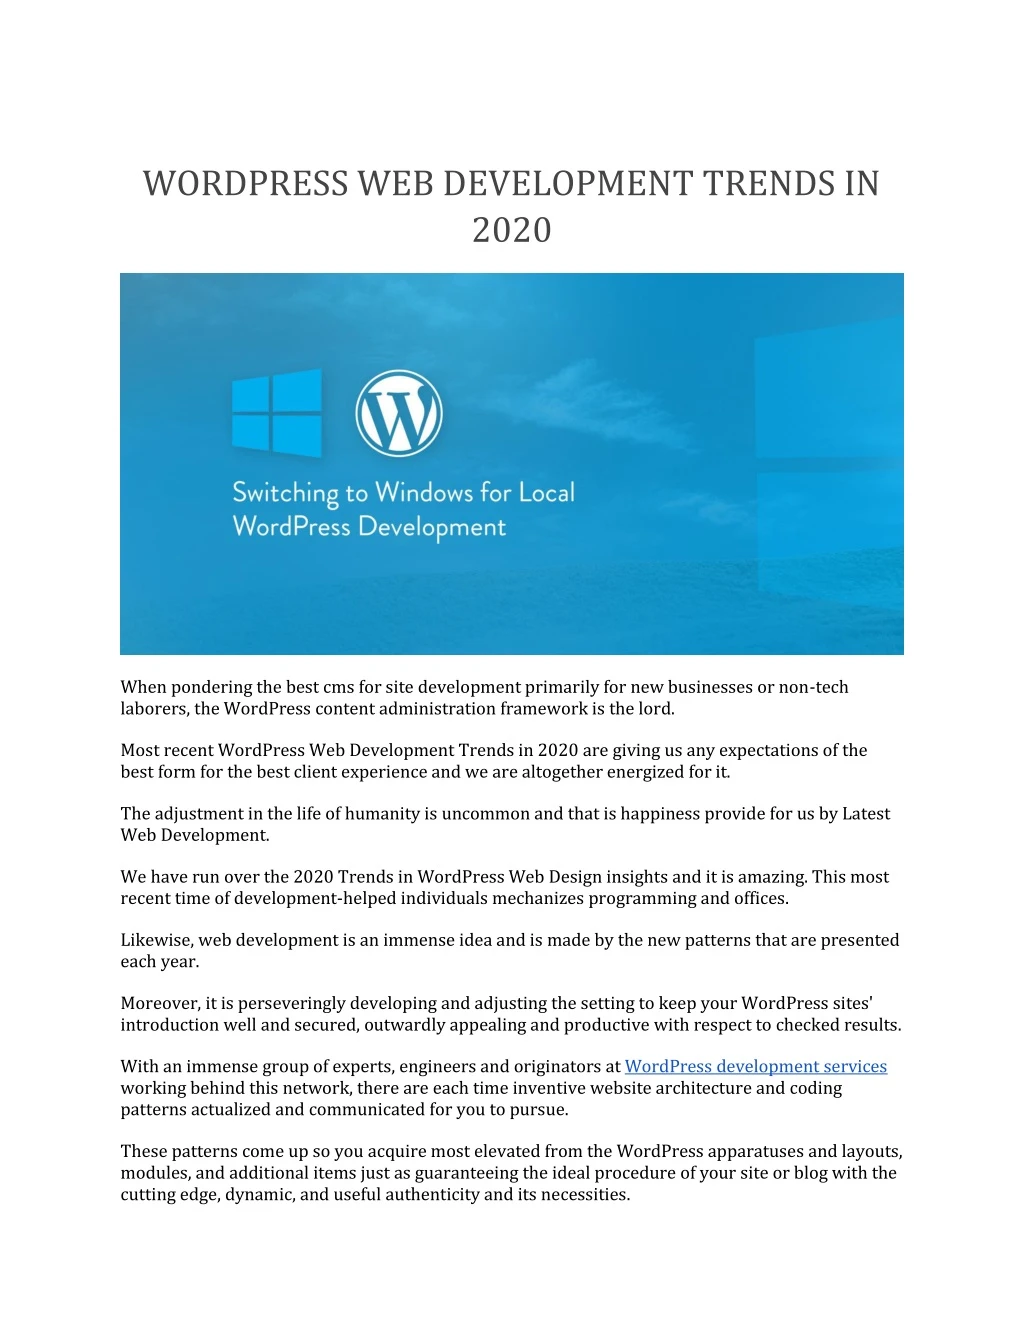 wordpress web development trends in 2020